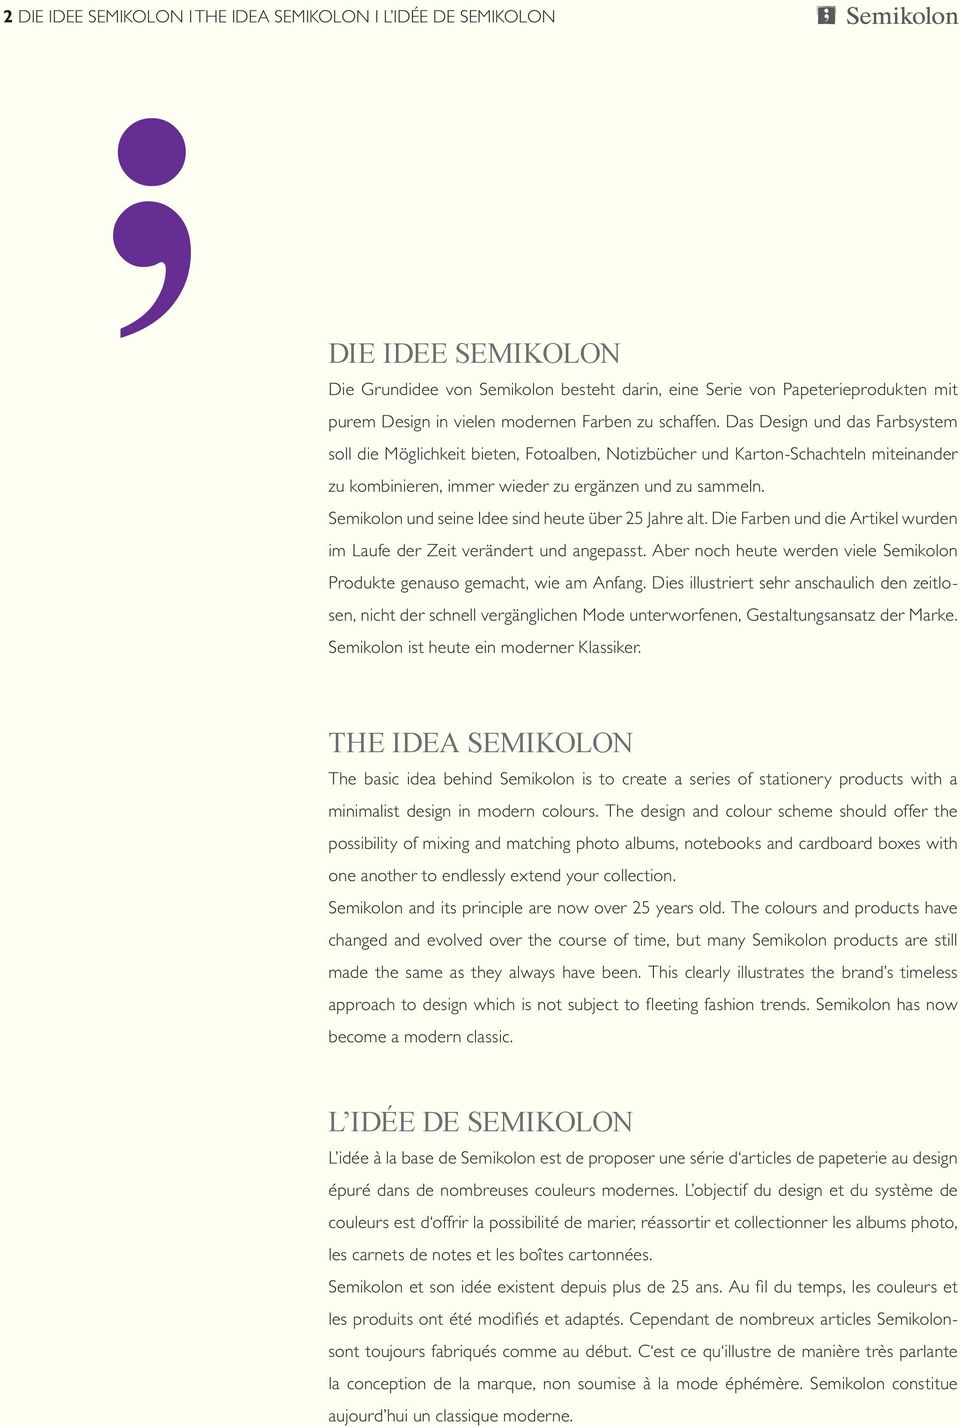 Semikolon und seine Idee sind heute über 25 Jahre alt. Die Farben und die Artikel wurden im Laufe der Zeit verändert und angepasst.